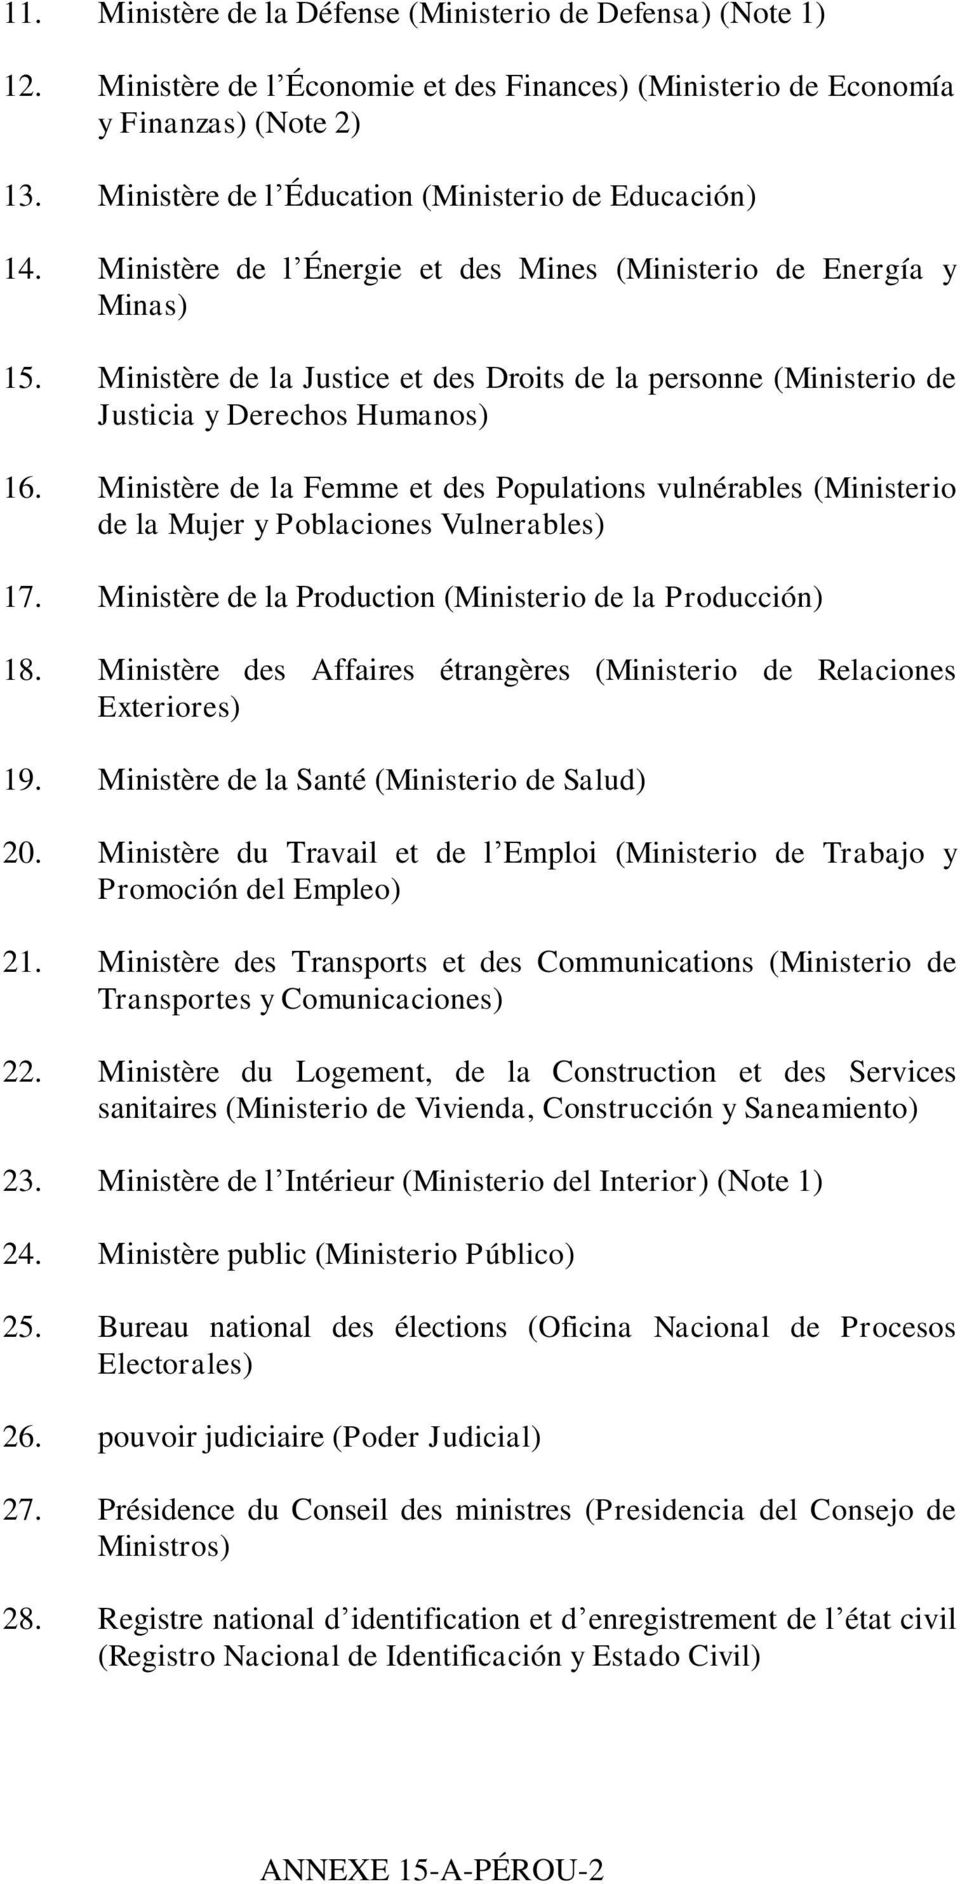 Ministère de la Justice et des Droits de la personne (Ministerio de Justicia y Derechos Humanos) 16.